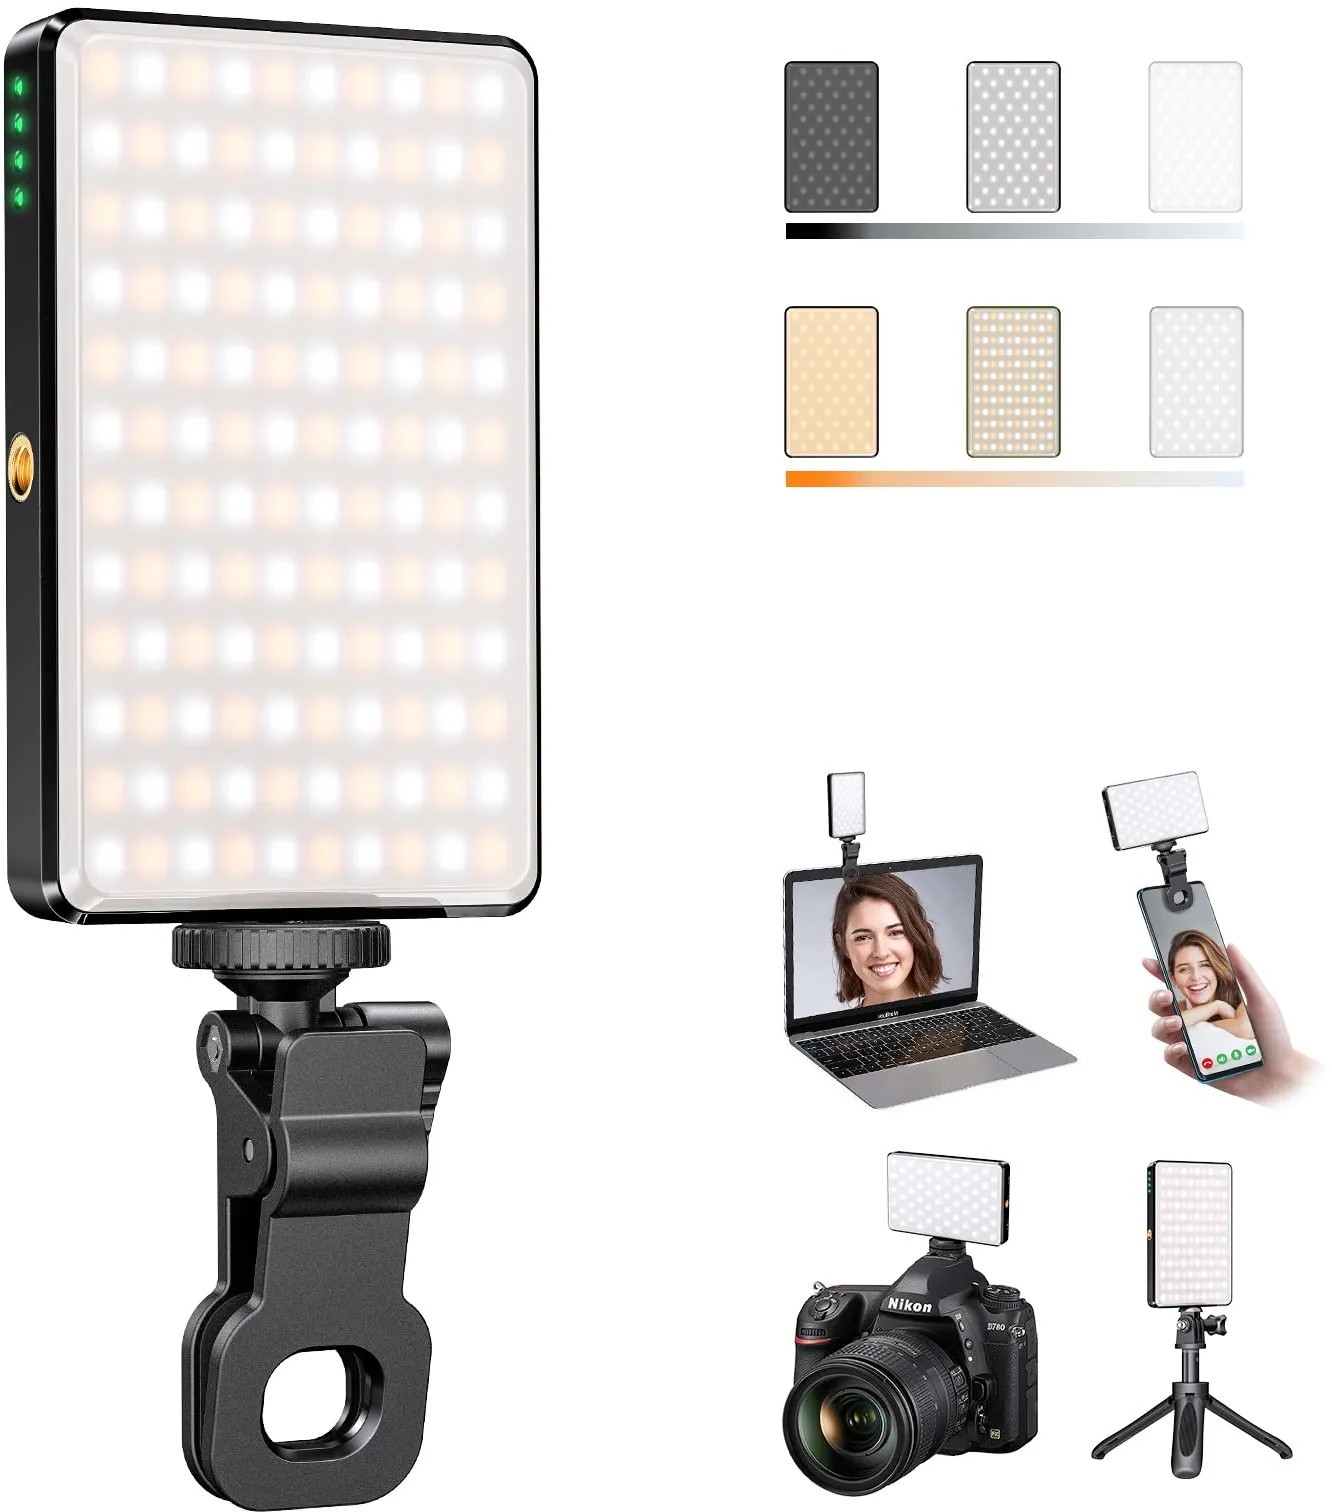 Starbea Selfie-Licht, Füll-Video-Licht mit Clip, 3000 mAh, wiederaufladbar, CRI 95+ 120 LEDs, tragbares Selfie-Licht für SLR/Laptop/Tablets/PC, geeignet für Fotografie/Videoaufnahme/Konferenz/Make-up